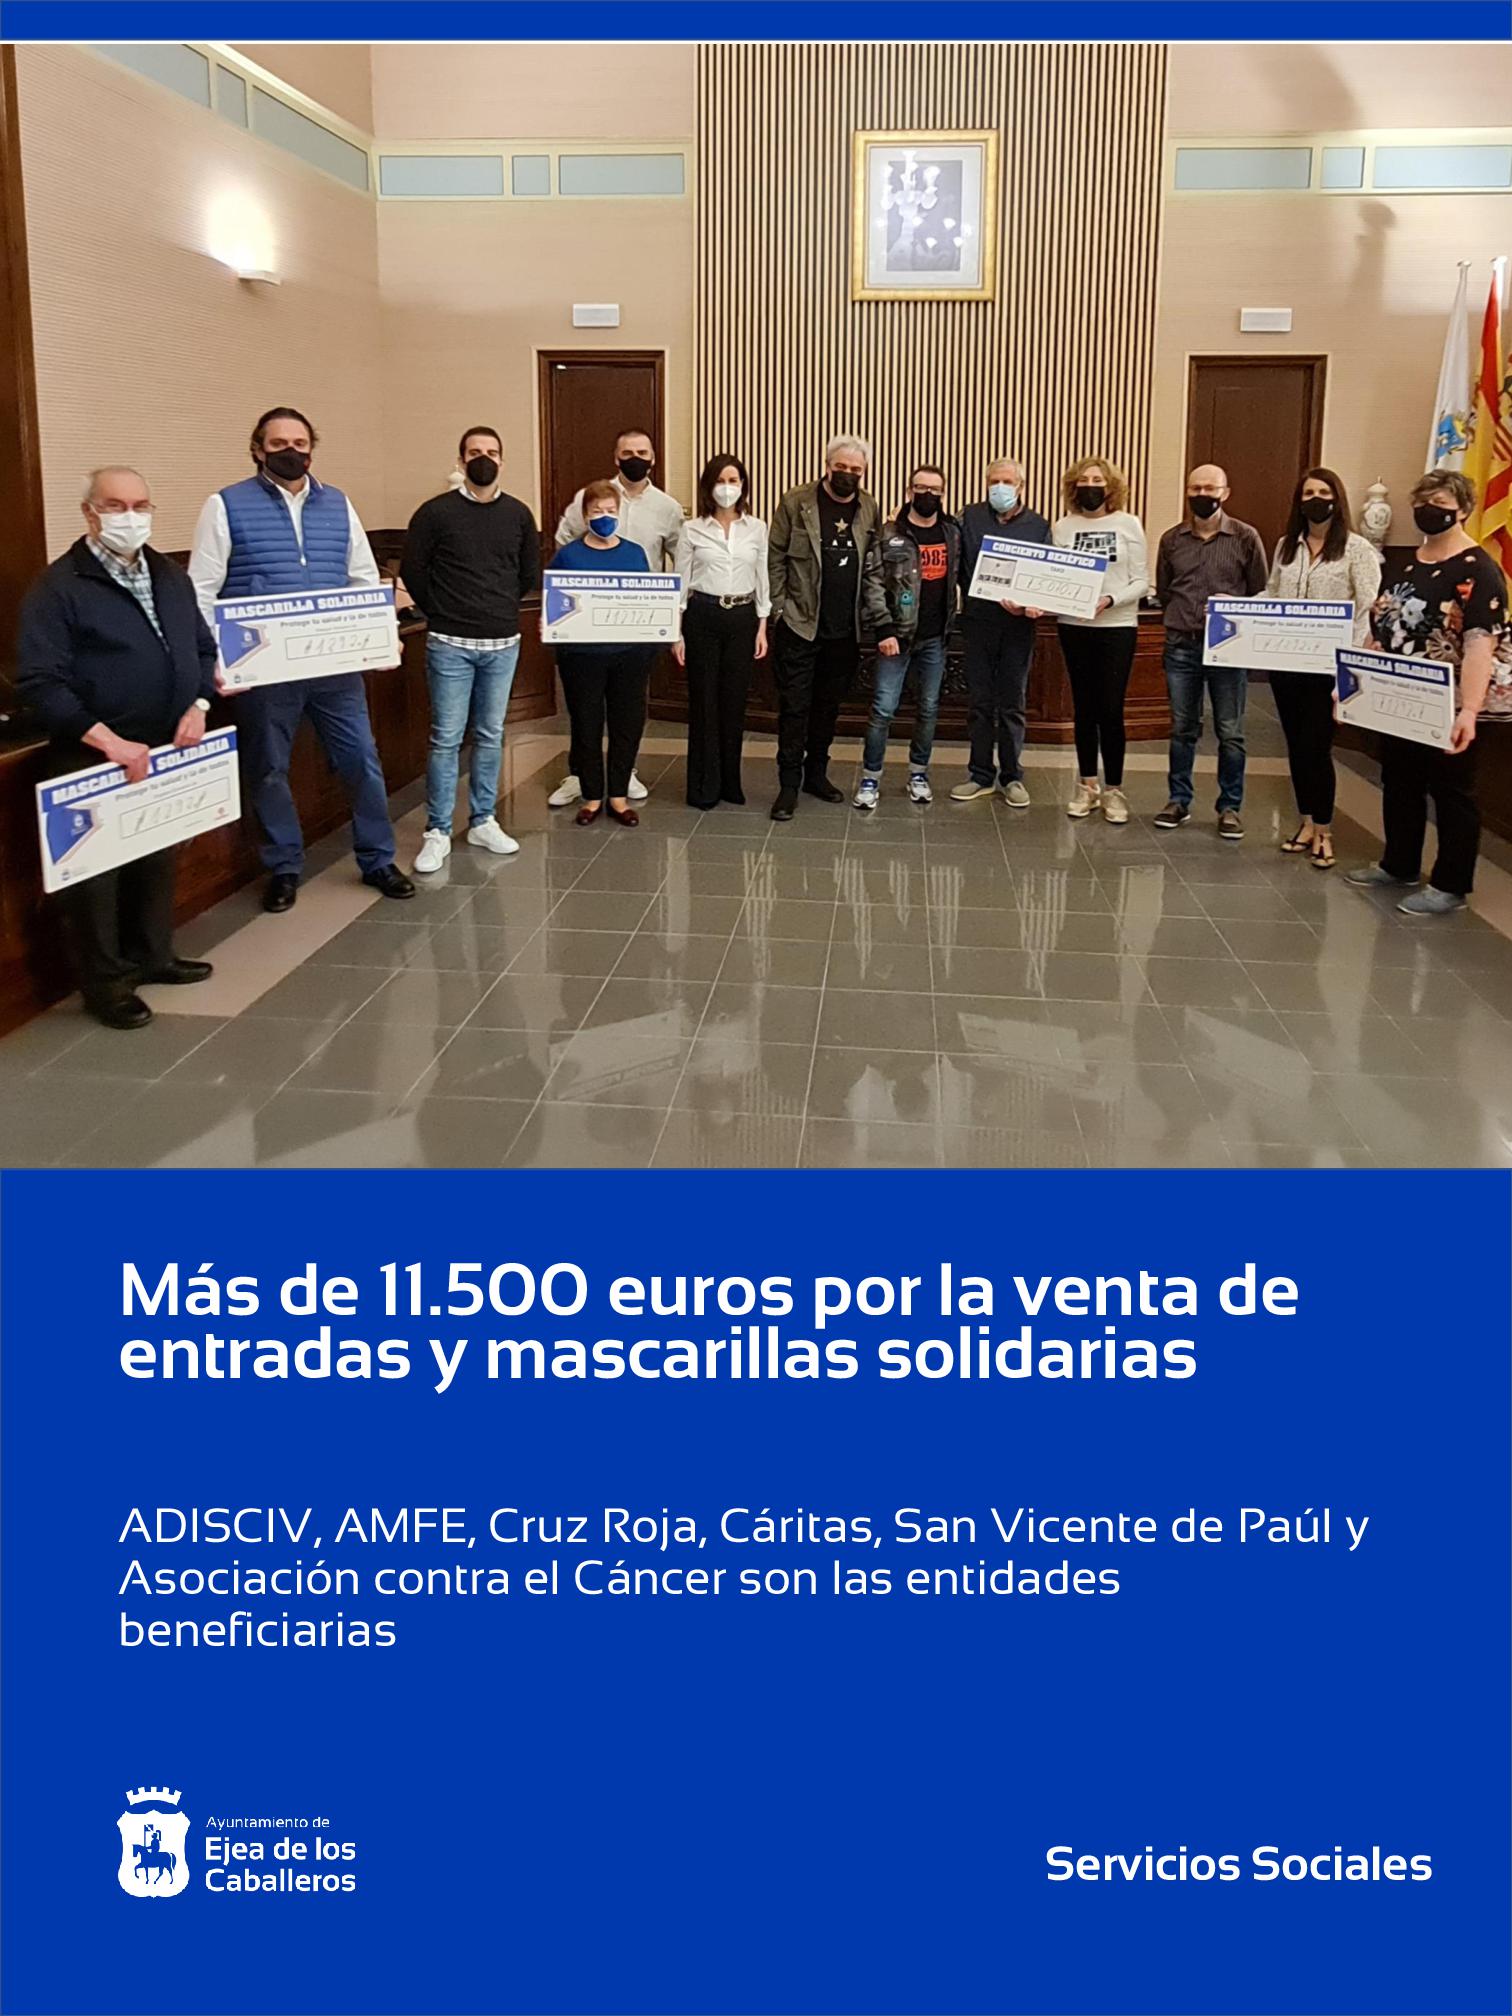 En este momento estás viendo Las entidades sociales de Ejea de los Caballeros reciben 11.530 euros del Ayuntamiento por la venta de mascarillas y entradas solidarias